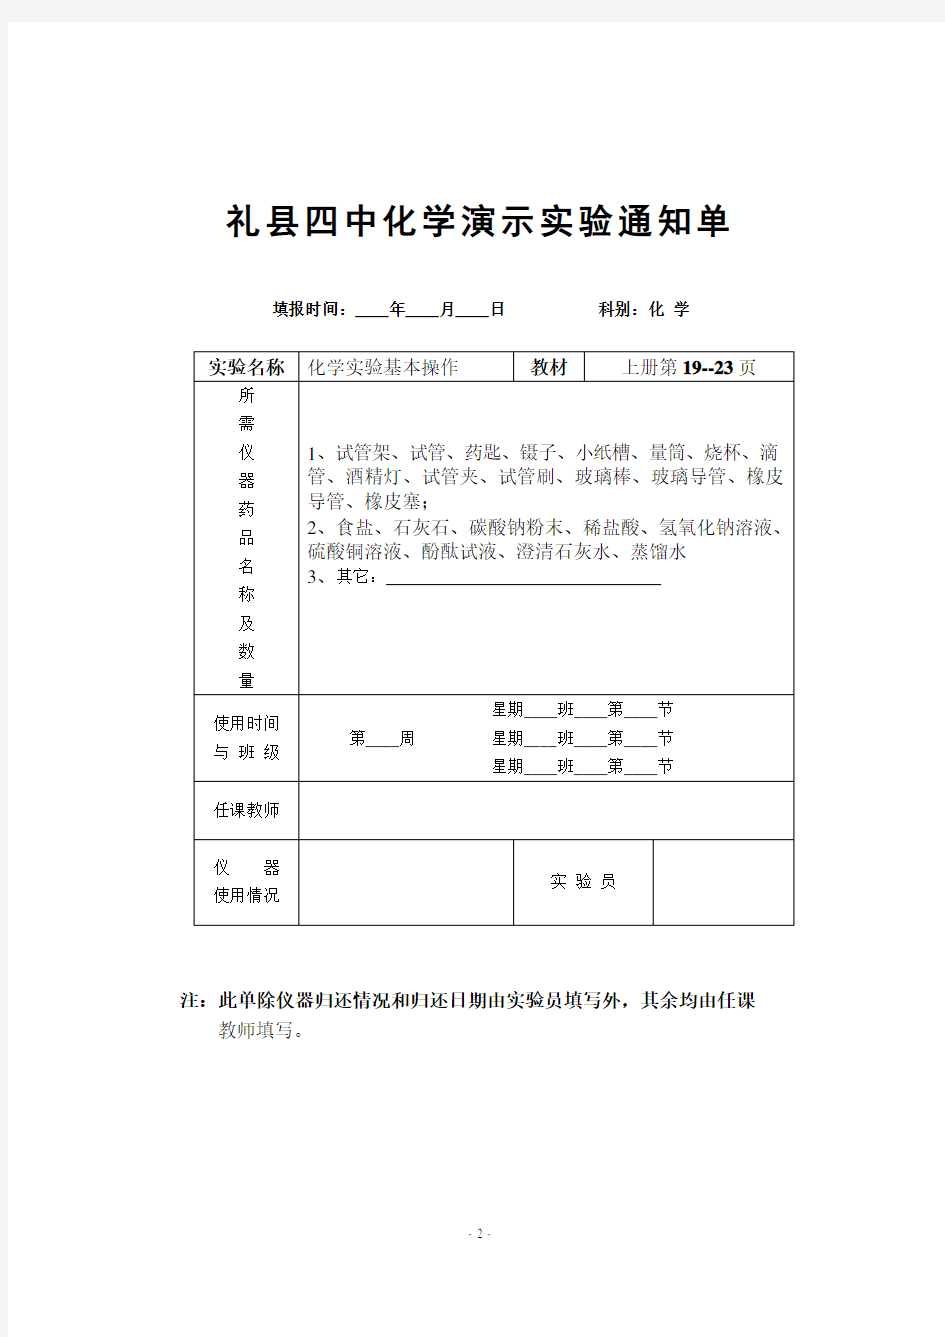 礼县第四中学九年级化学上册演示实验通知单